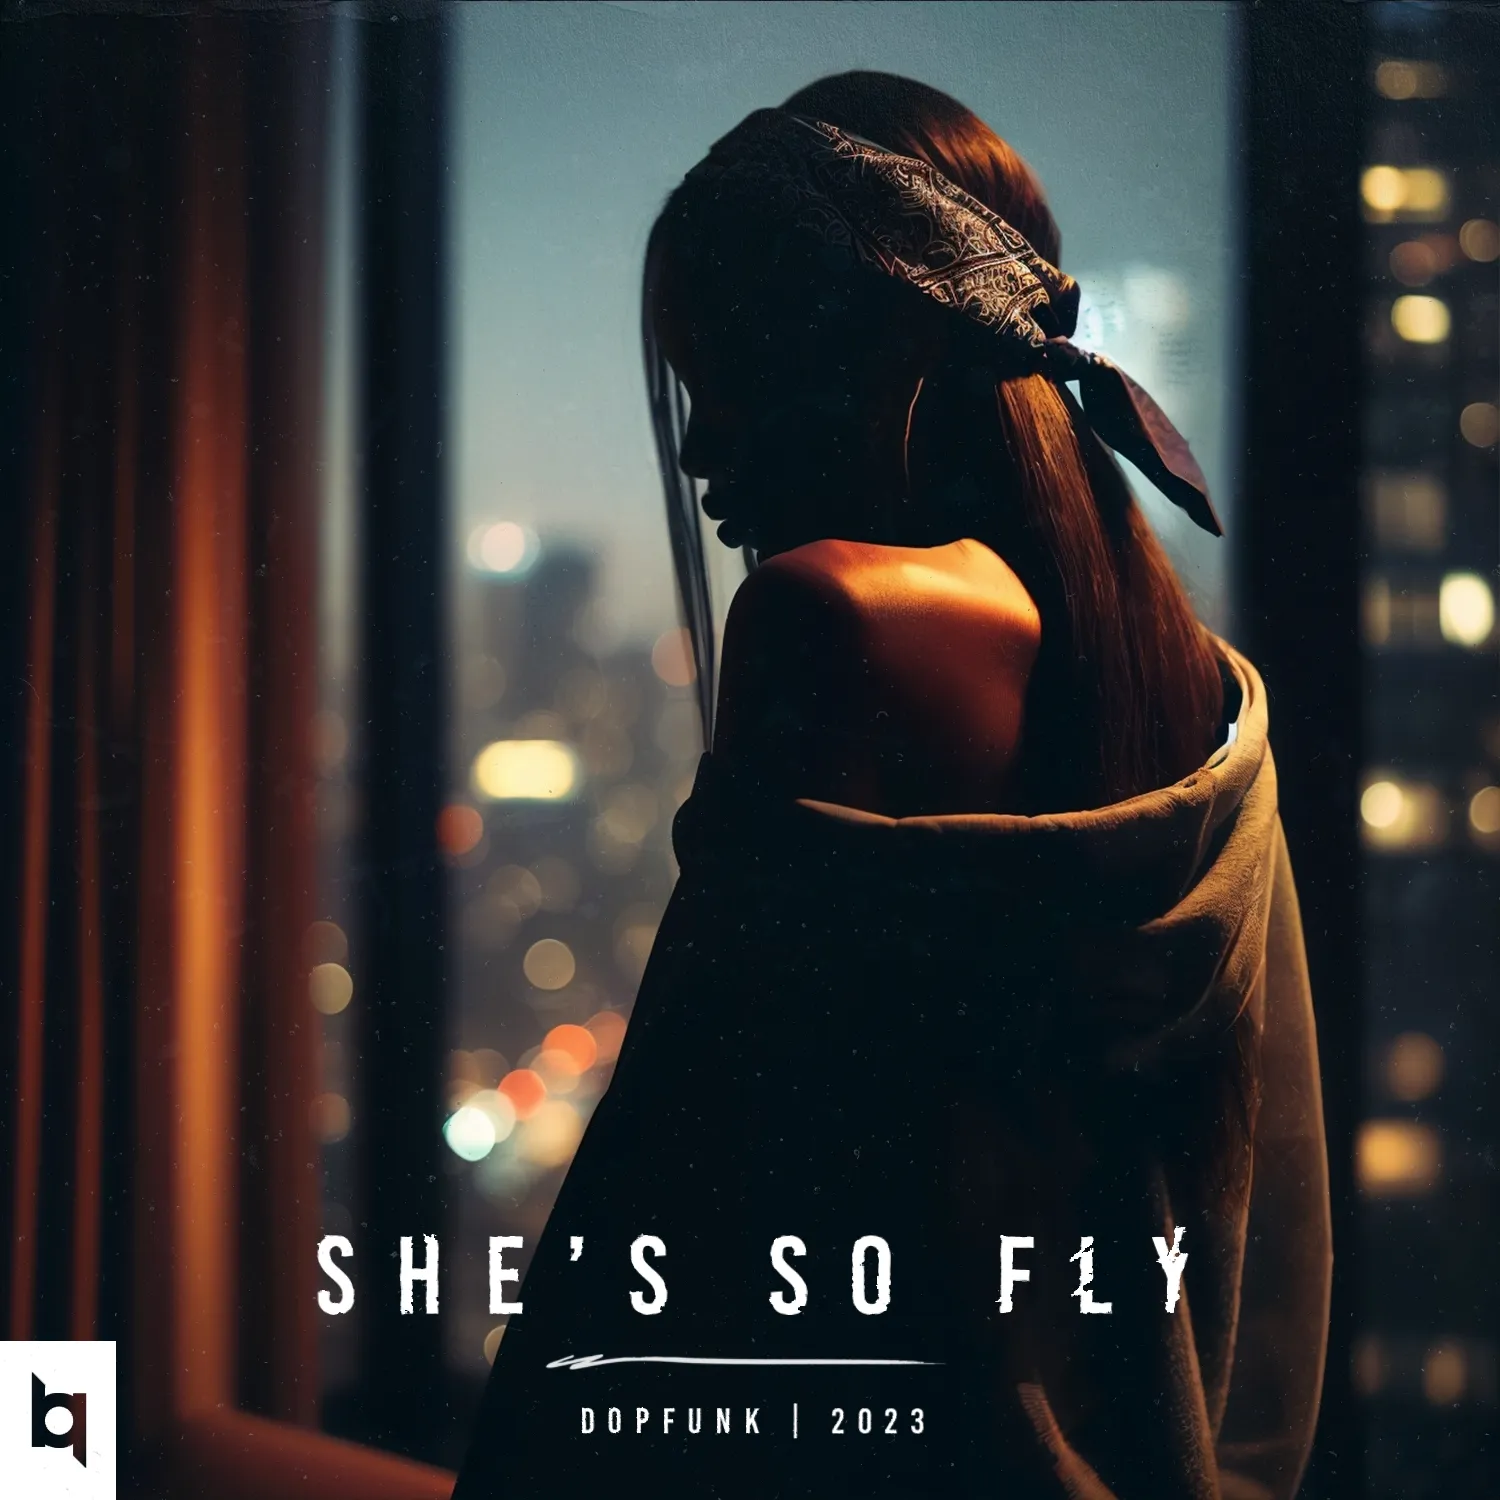 02. She's so fly